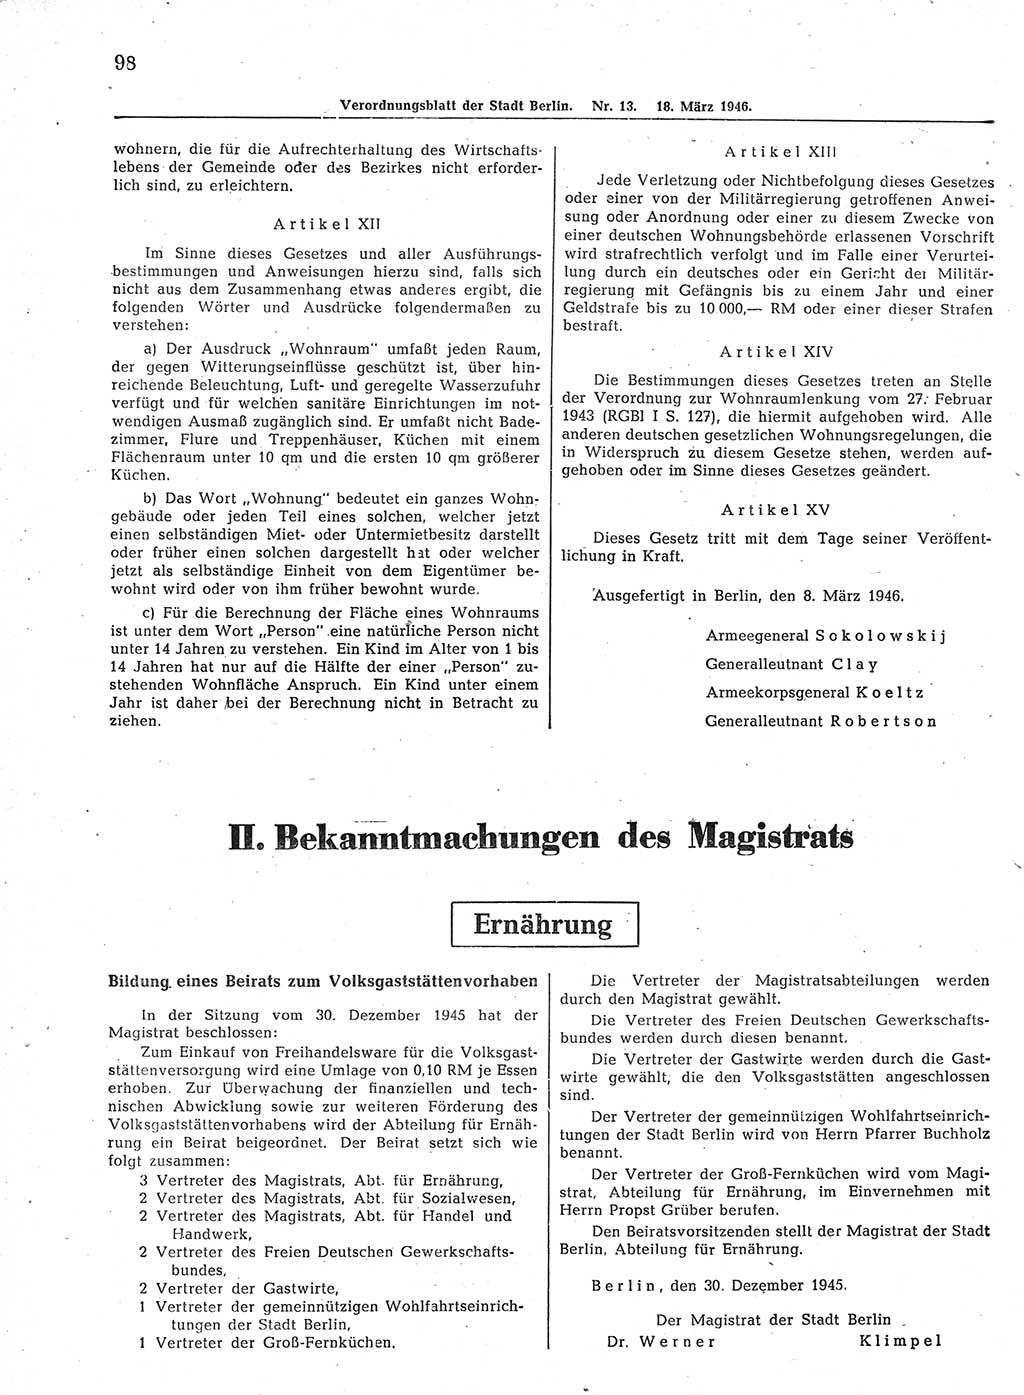 Verordnungsblatt (VOBl.) der Stadt Berlin, für Groß-Berlin 1946, Seite 98 (VOBl. Bln. 1946, S. 98)